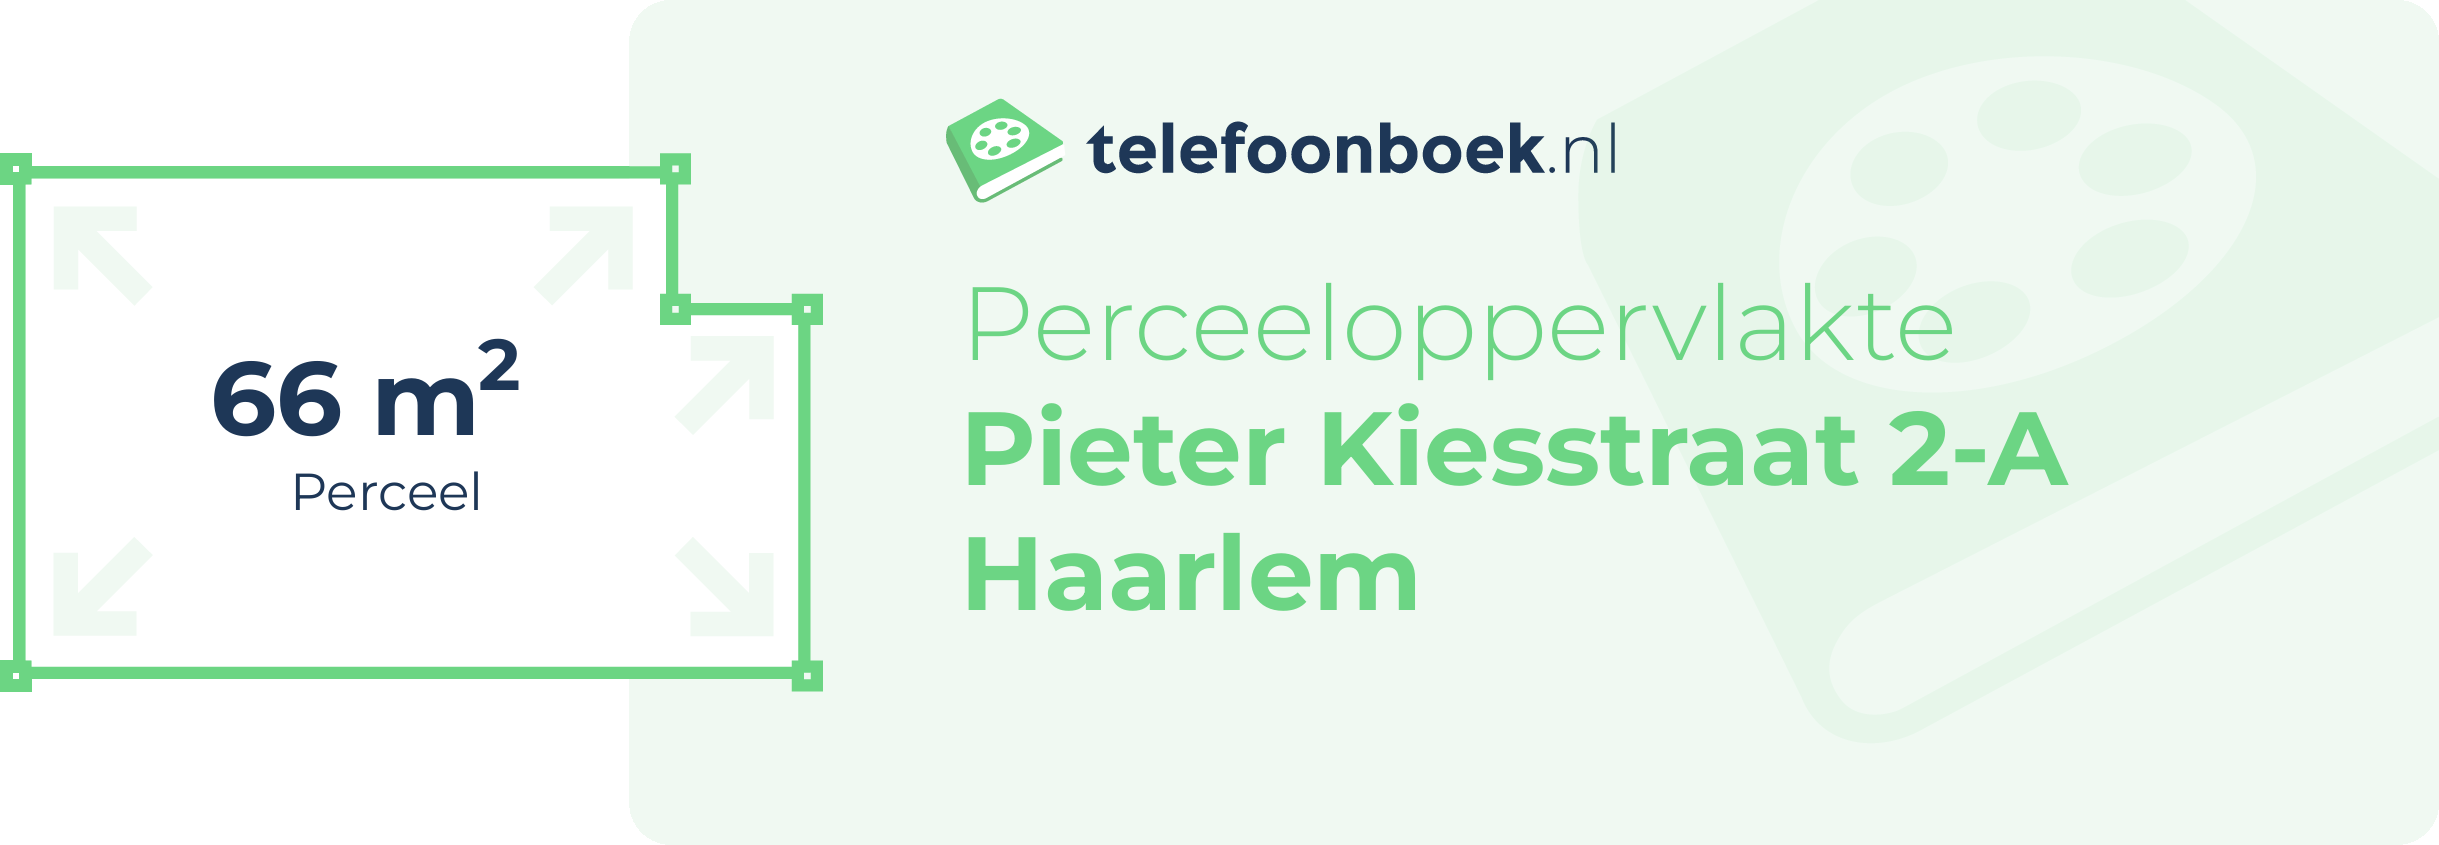 Perceeloppervlakte Pieter Kiesstraat 2-A Haarlem